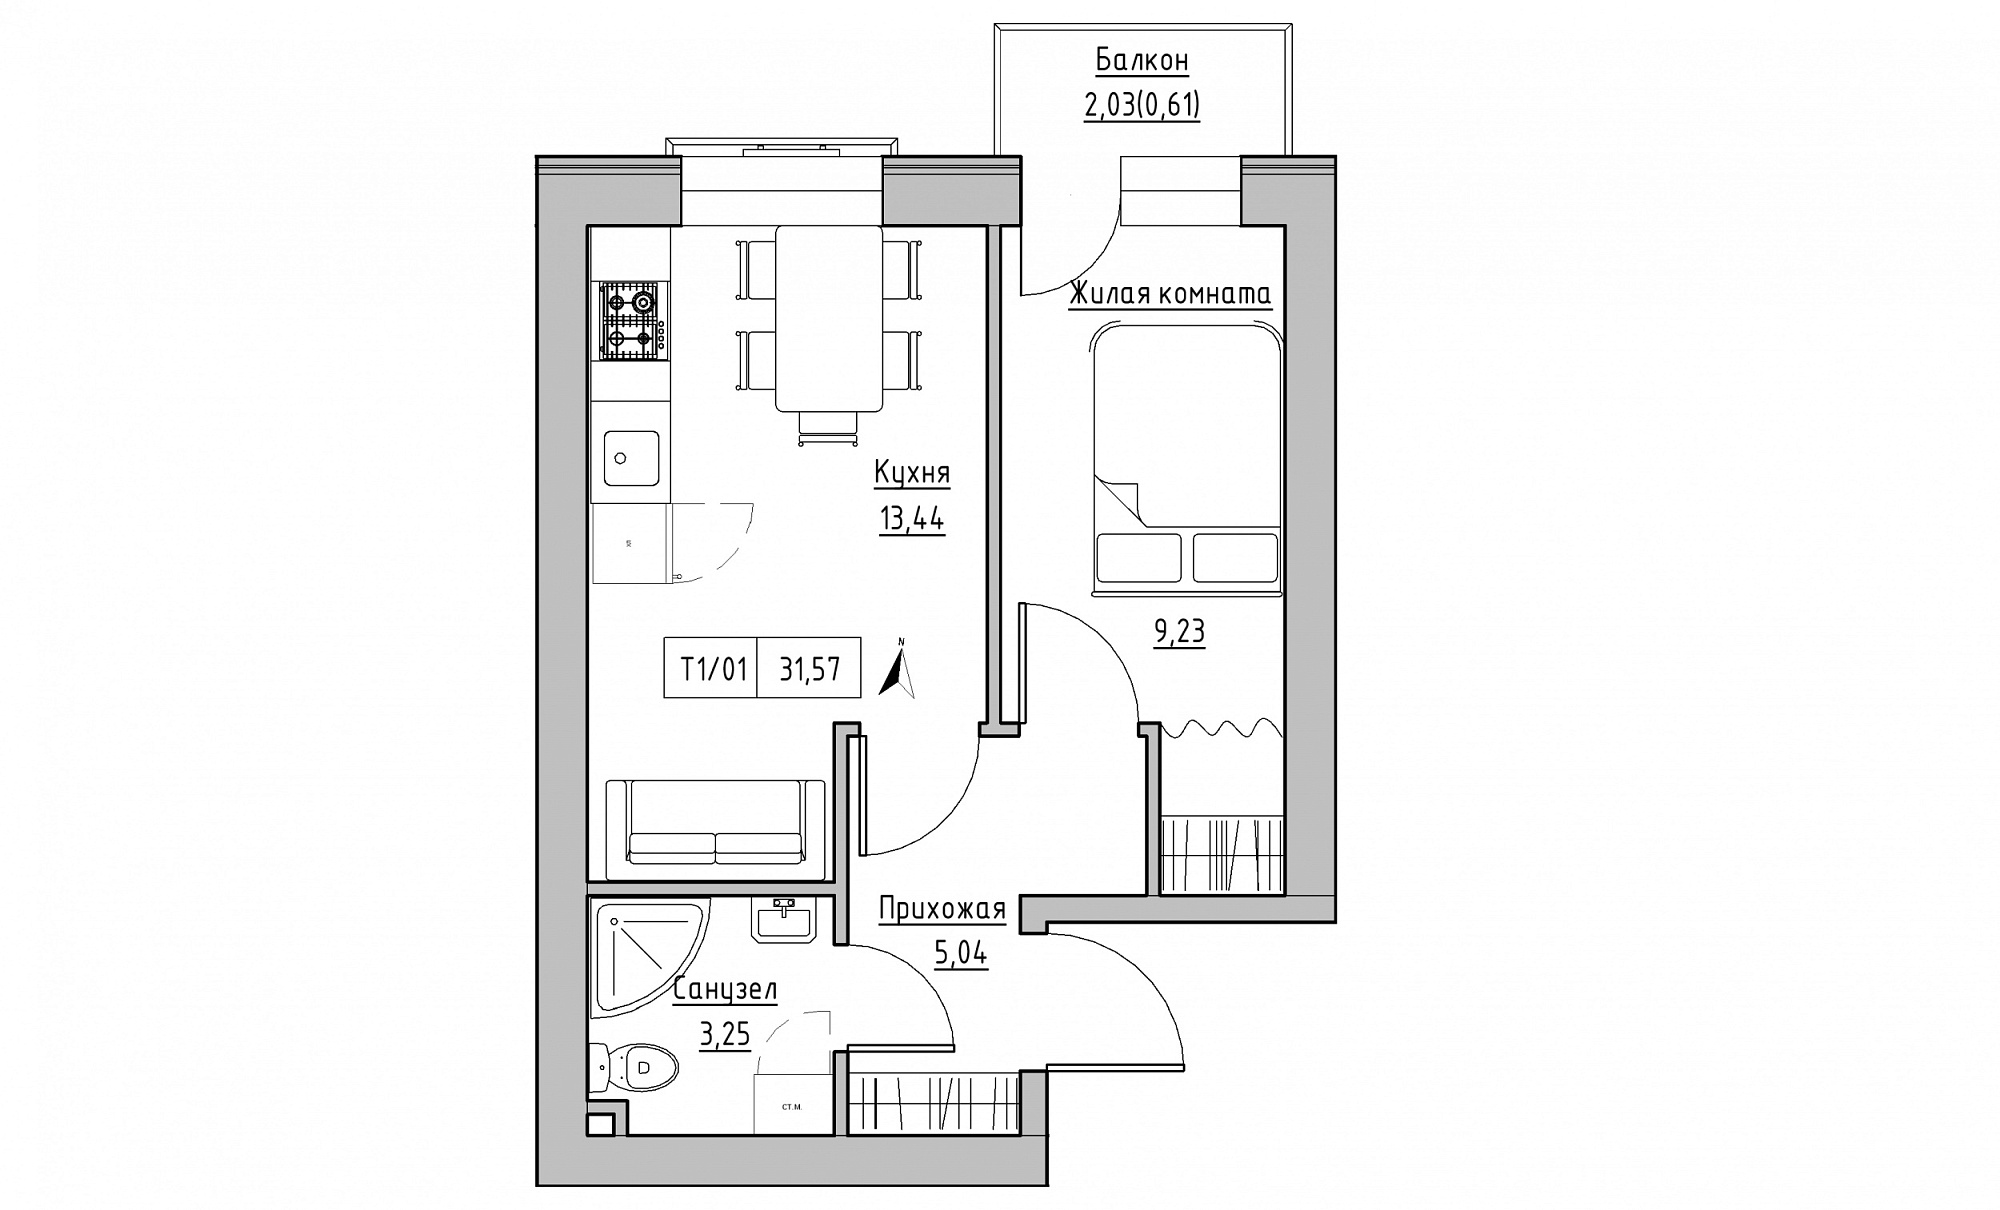 Планировка 1-к квартира площей 31.57м2, KS-015-04/0013.